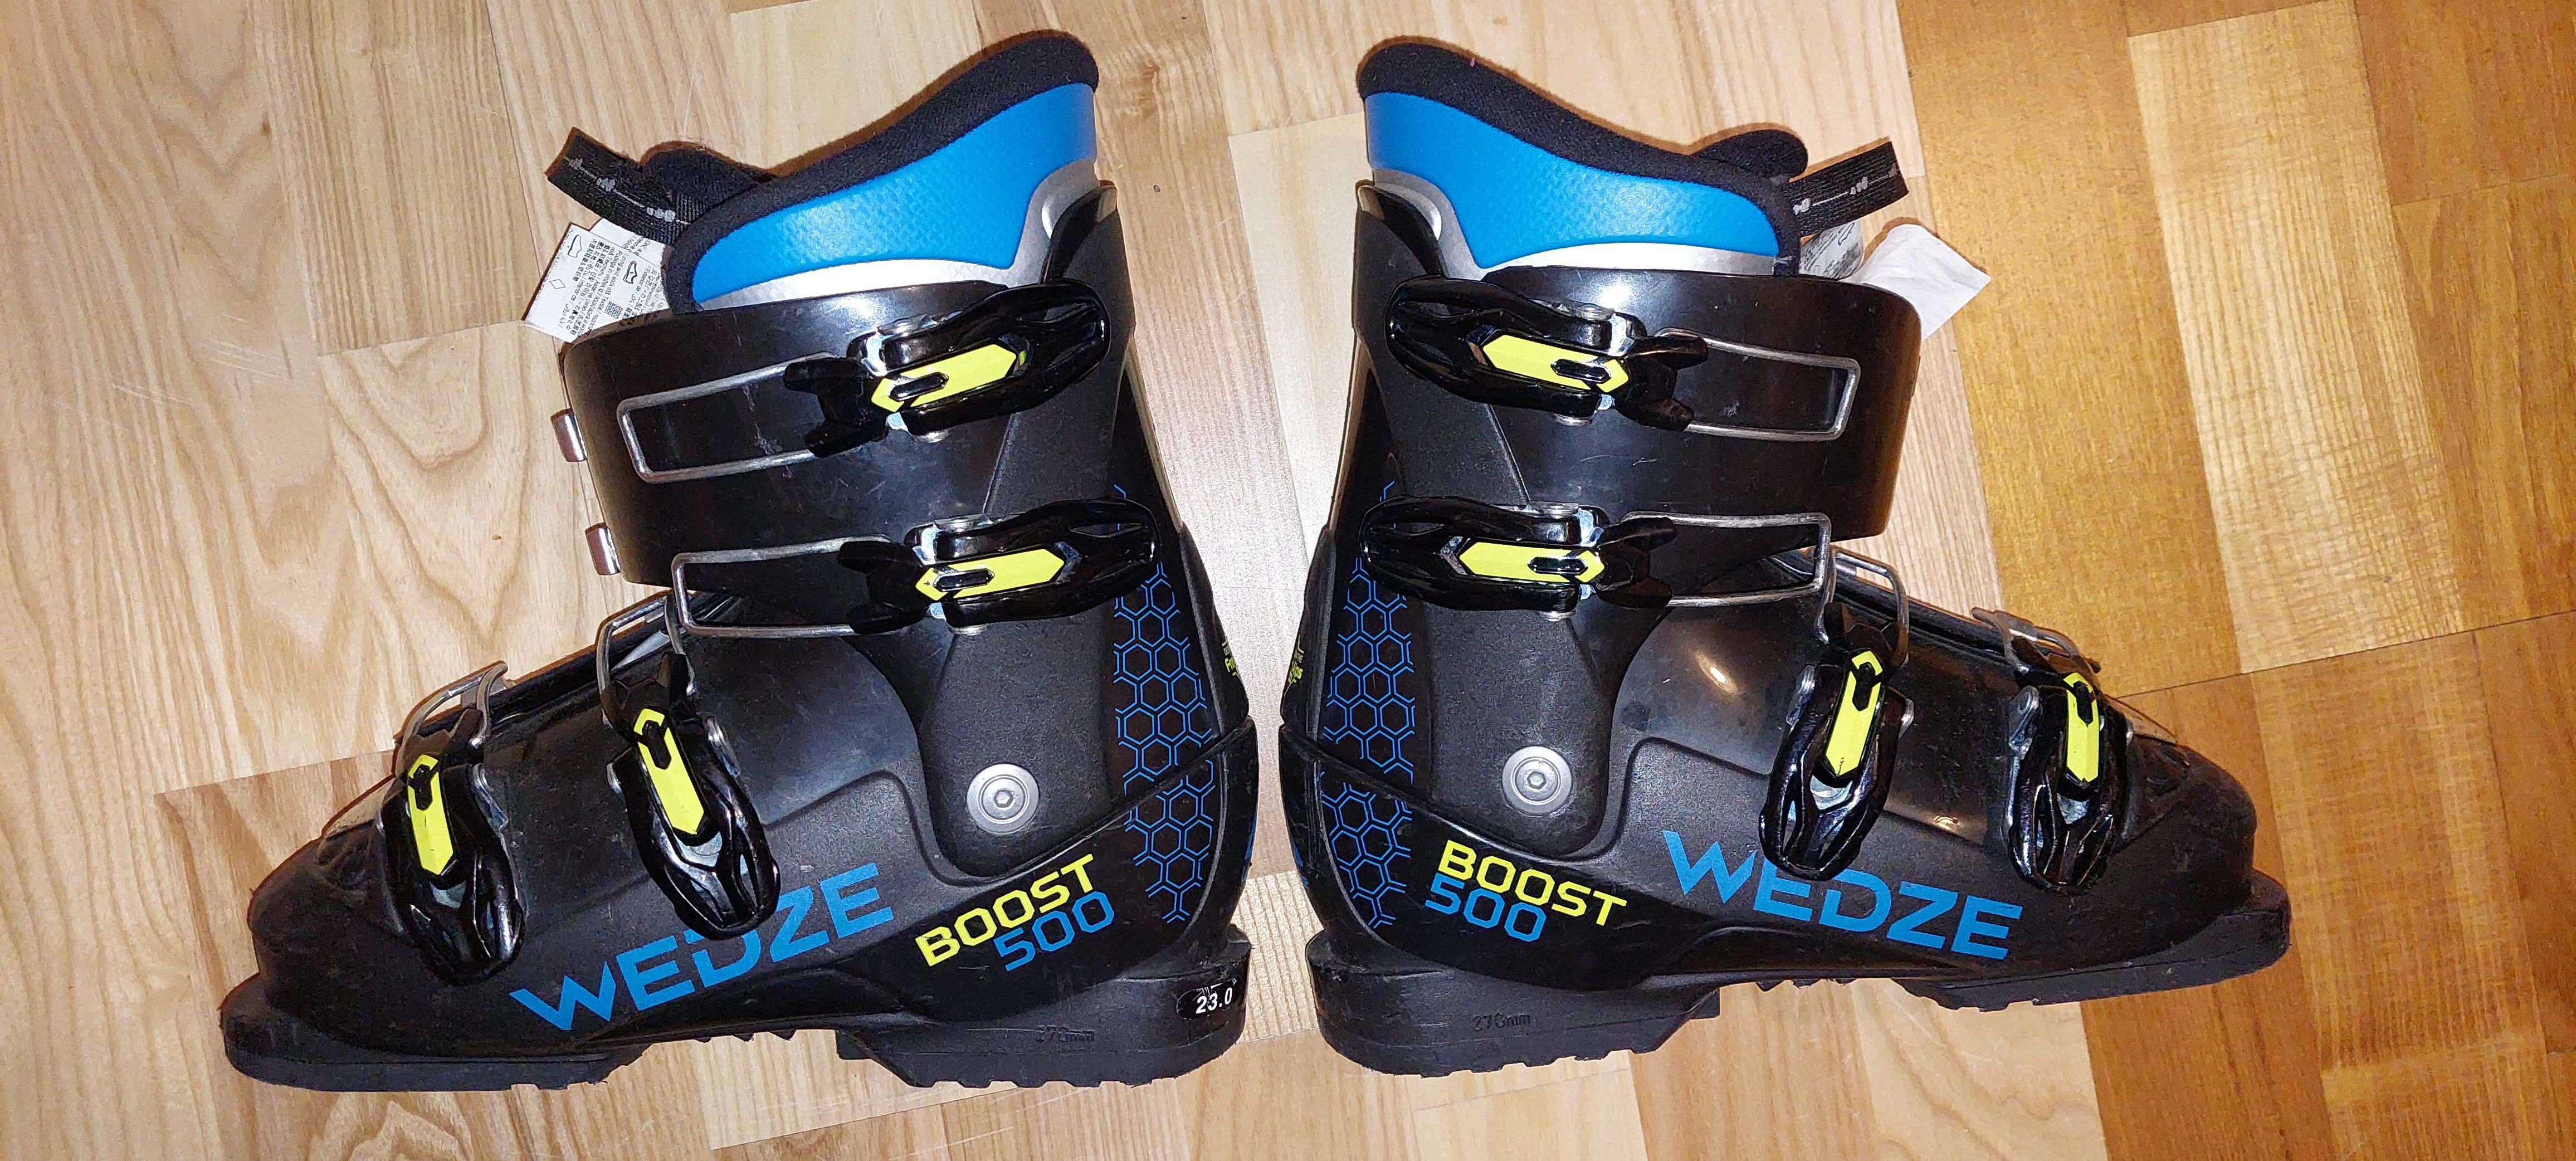 Buty narciarskie zjazdowe Wedze Boost 500 rozmiar 34,5 (wkładka 230mm)